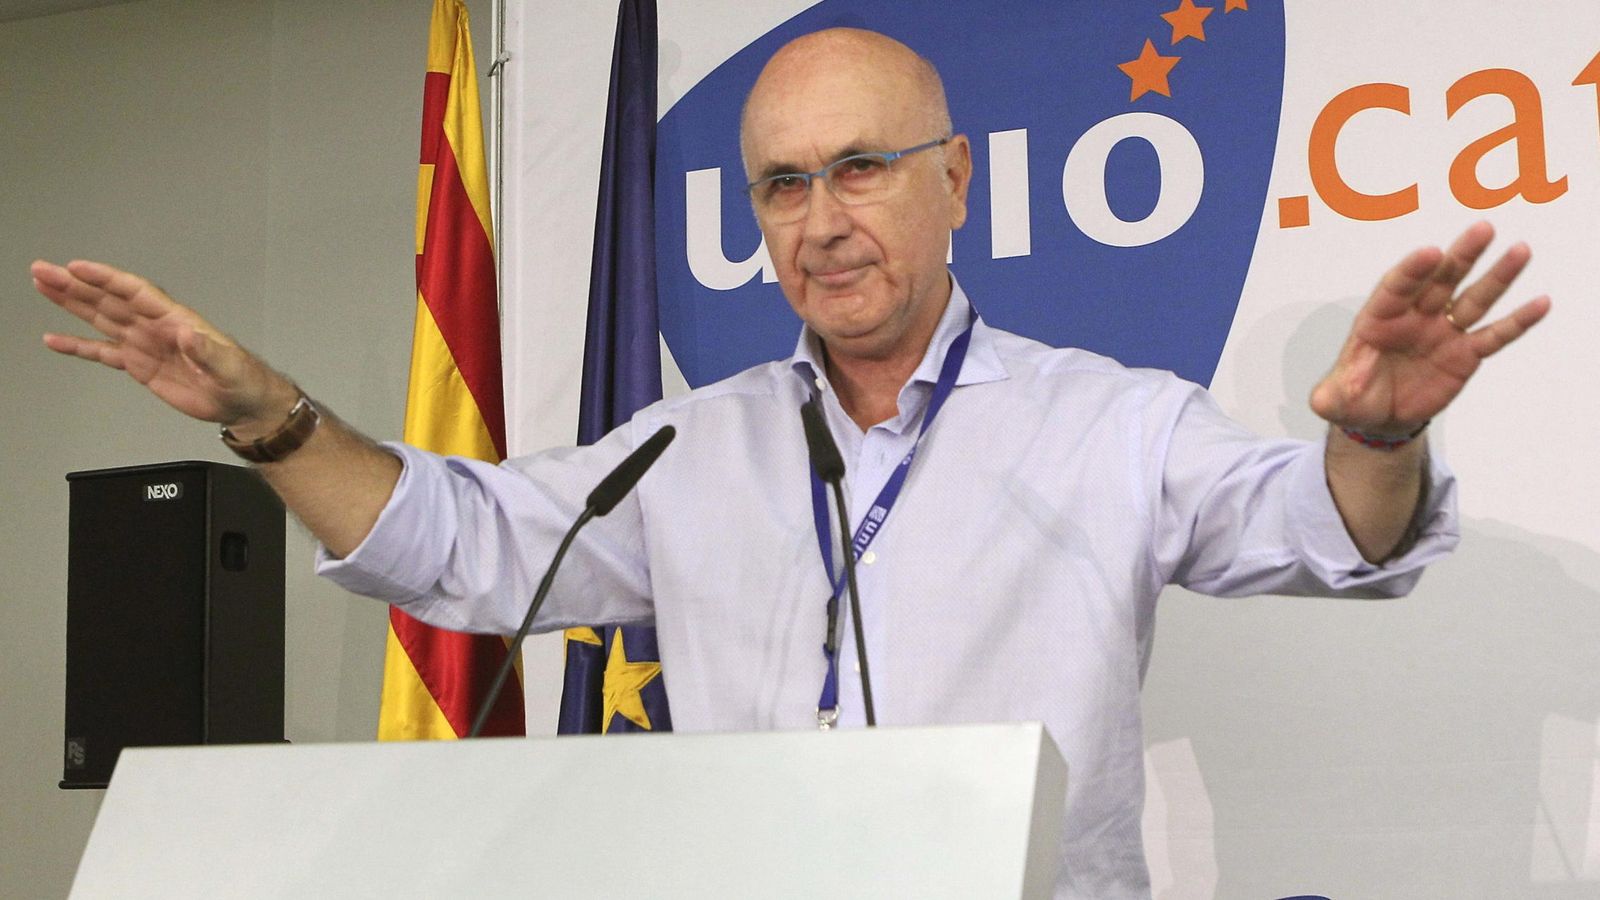 Foto: Josep Antoni Duran Lleida presidente del comité de Gobierno de UDC. (Efe)